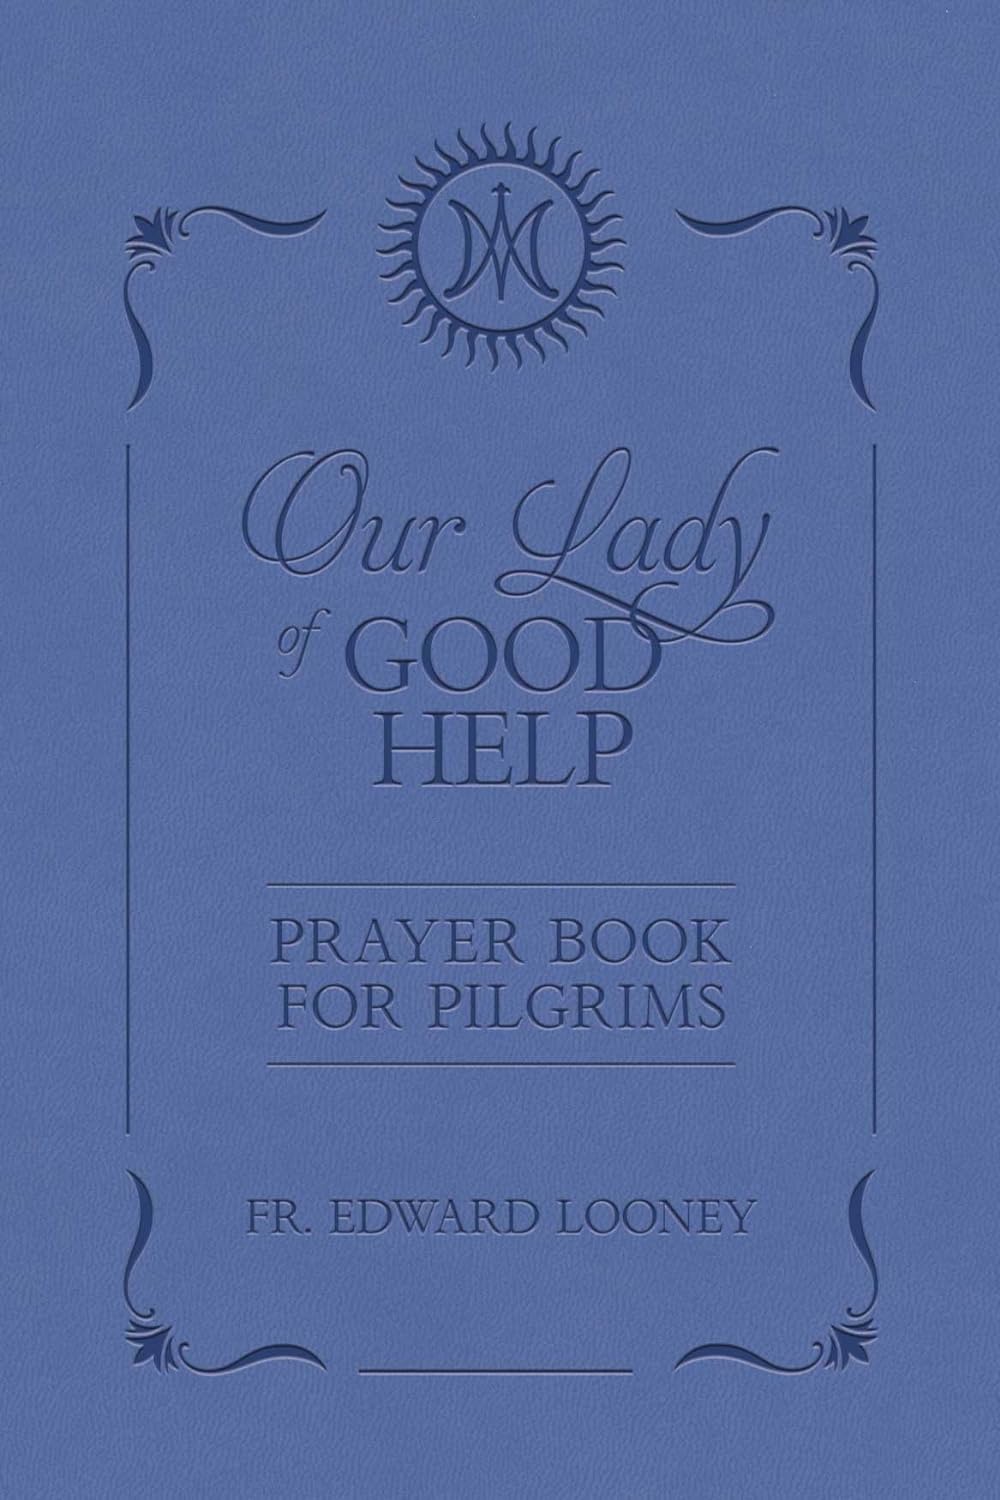 OLGH Prayer Book for Pilgrims